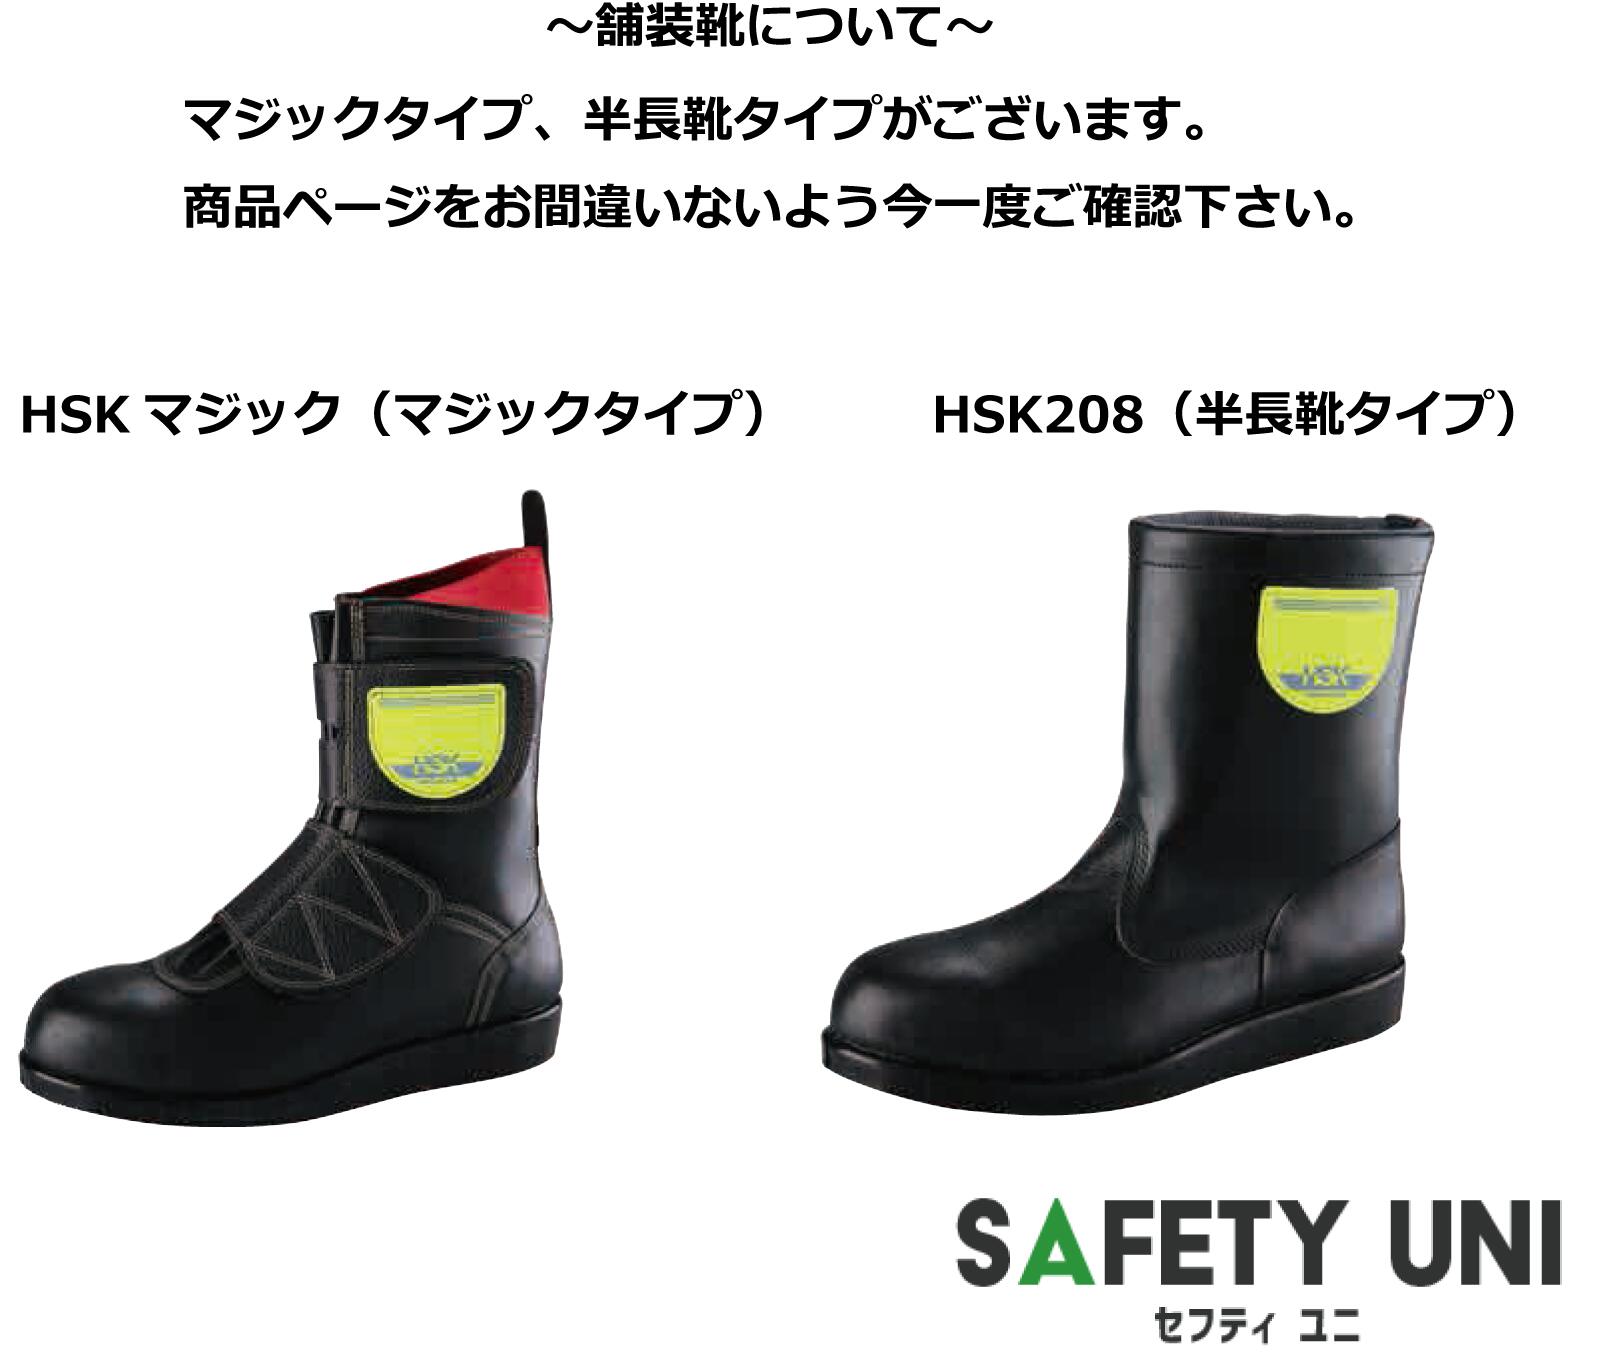 サックスの [ノサックス] Nosacks 舗装靴 HSK半長靴 HSK208 BK(黒/28cm)：ユニオン サックスの